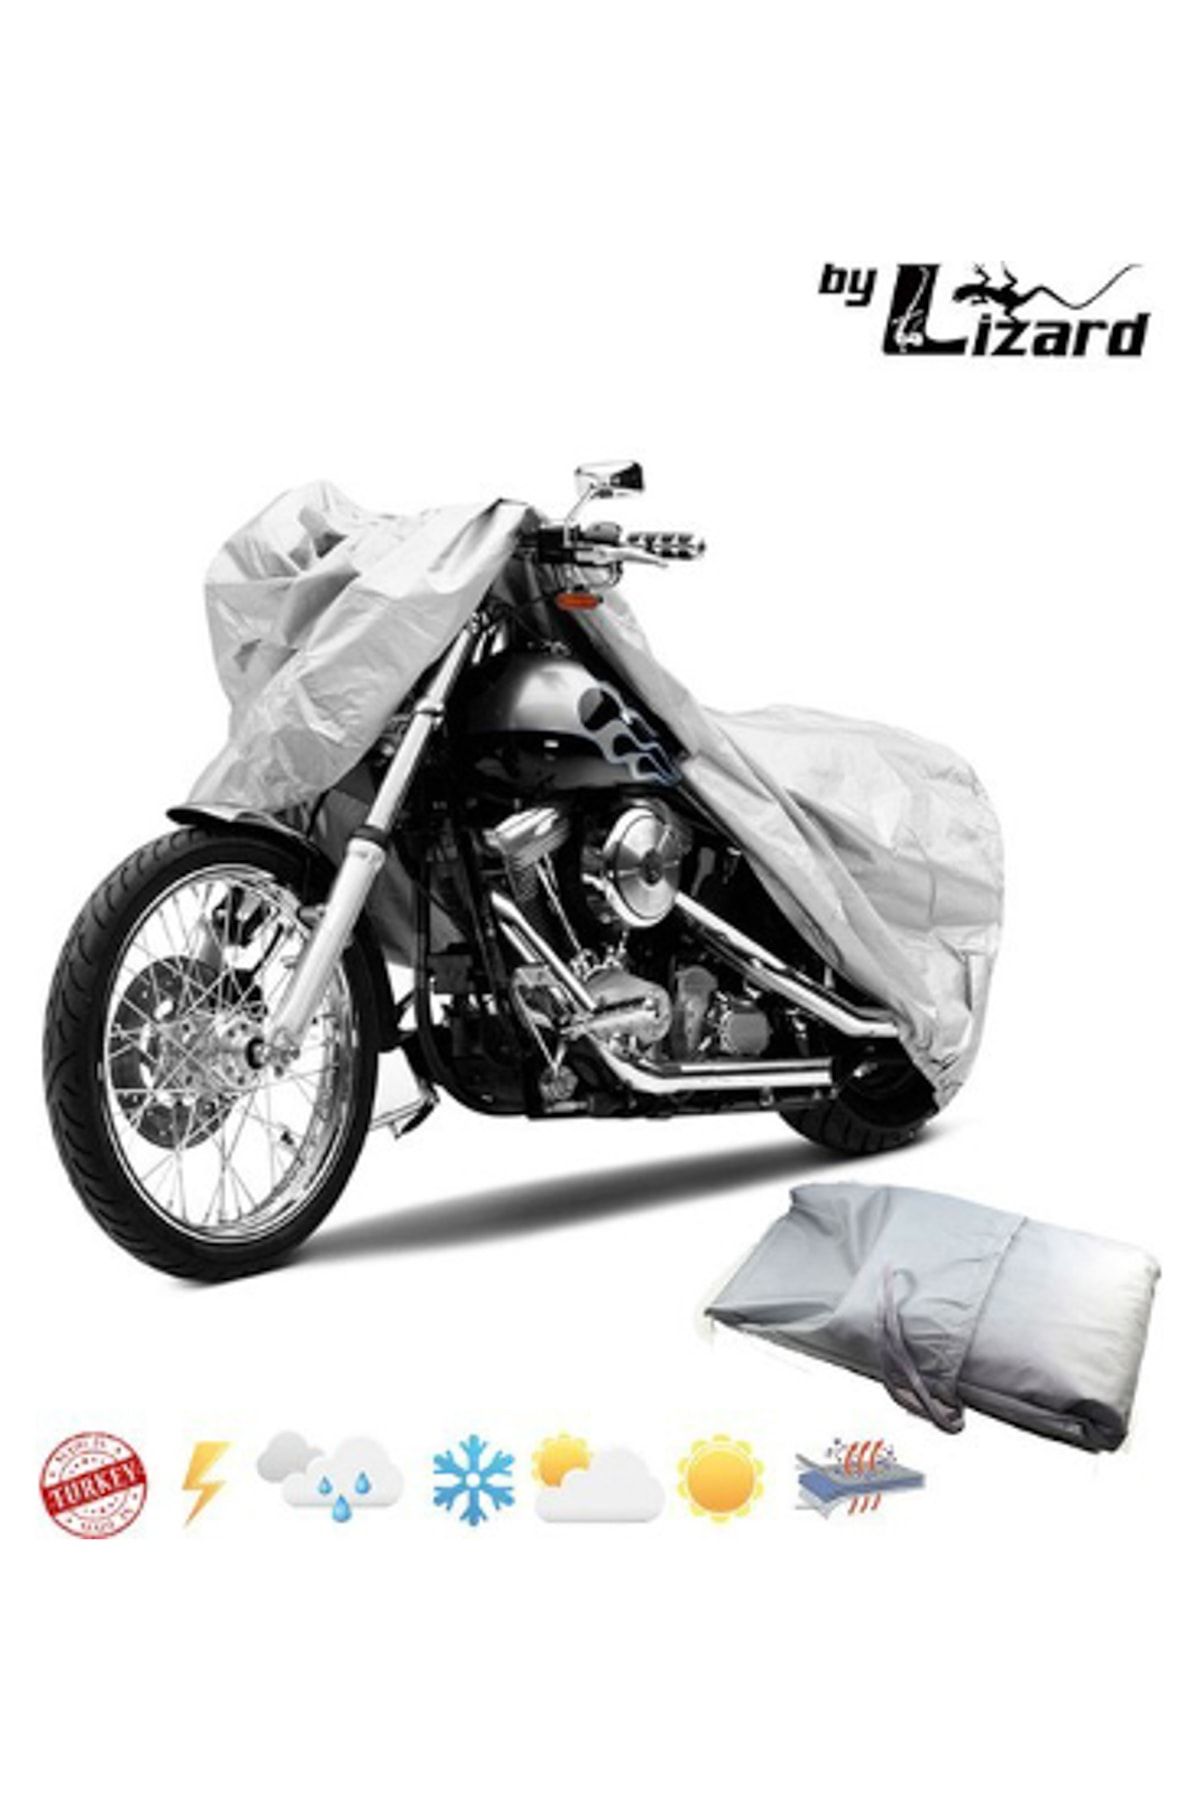 ByLizard Royal Enfield Classic 500 Motosiklet Brandası, Motor Örtüsü, Çadır